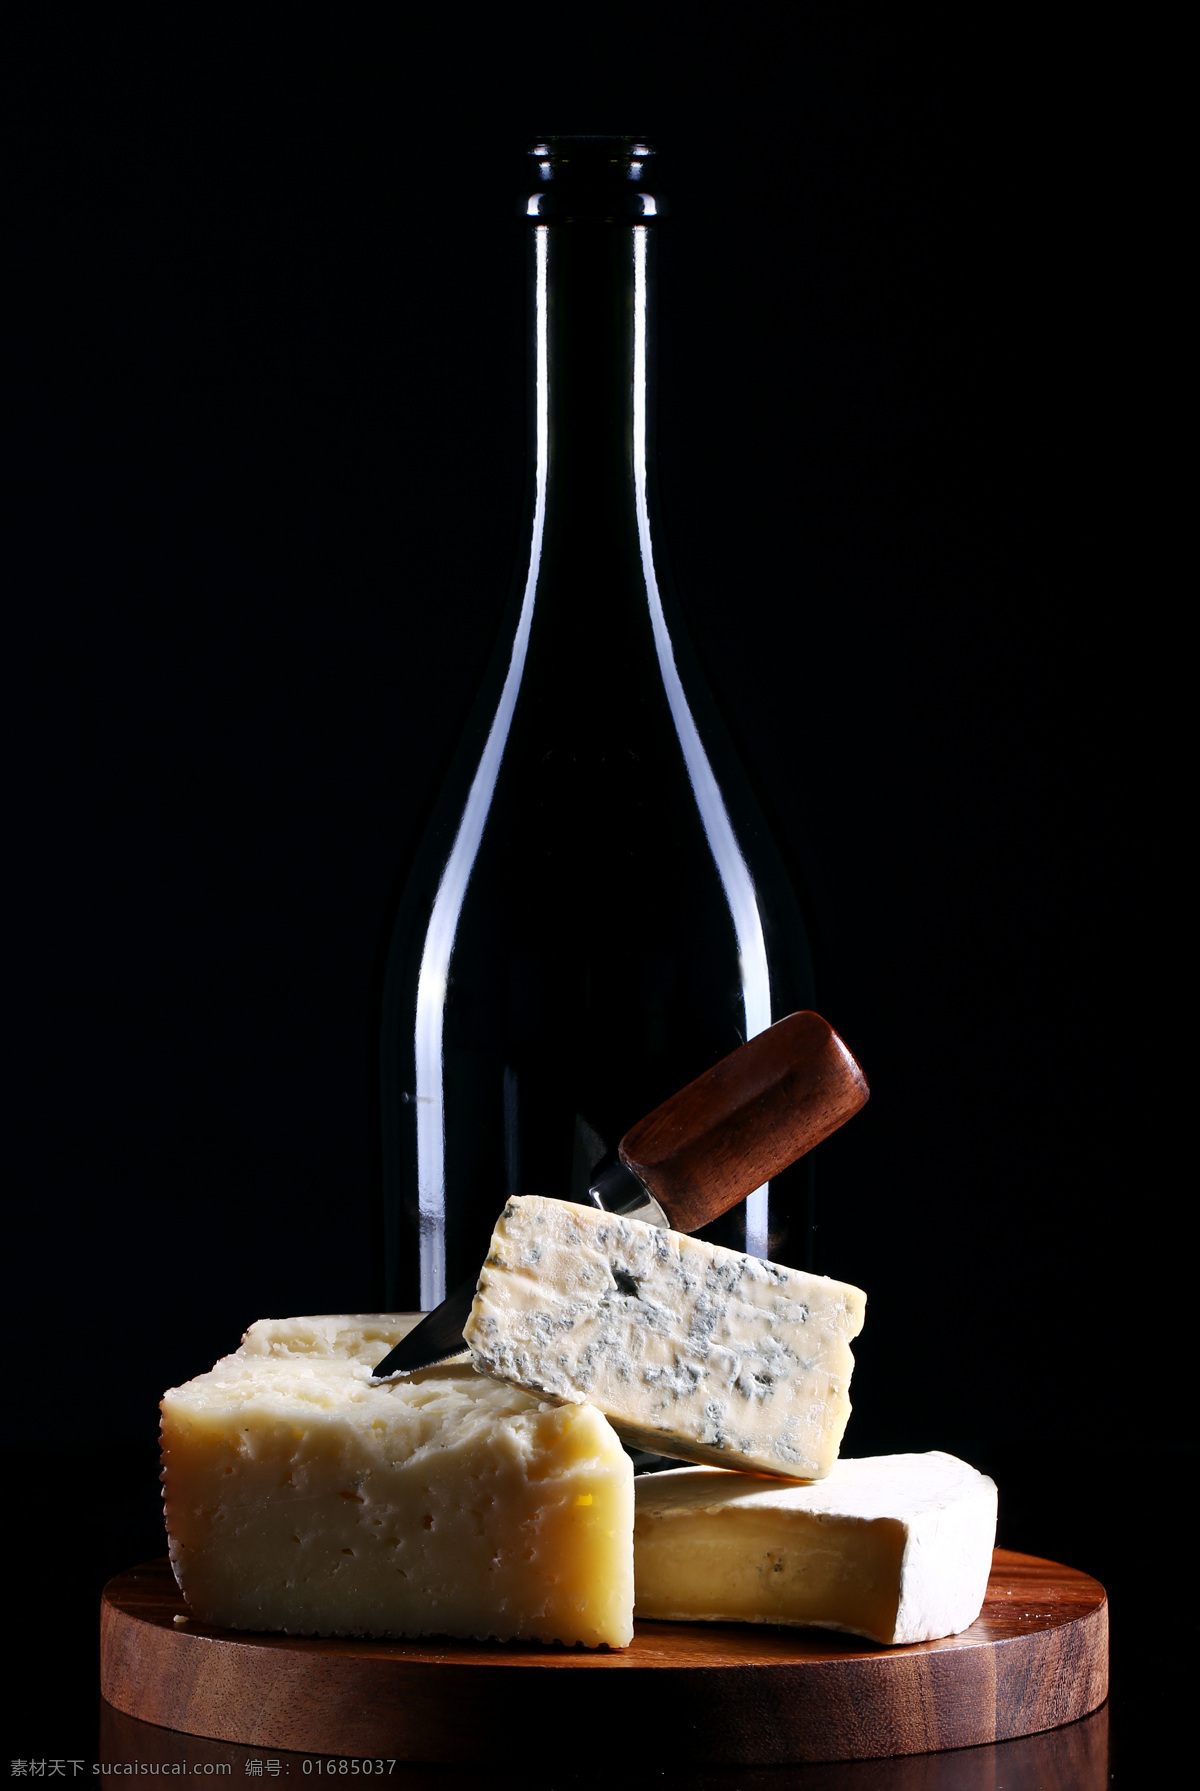 奶酪 葡萄酒 酒瓶 乳酪 芝士 奶酪美食 食材 食物原料 奶制品 美食图片 餐饮美食